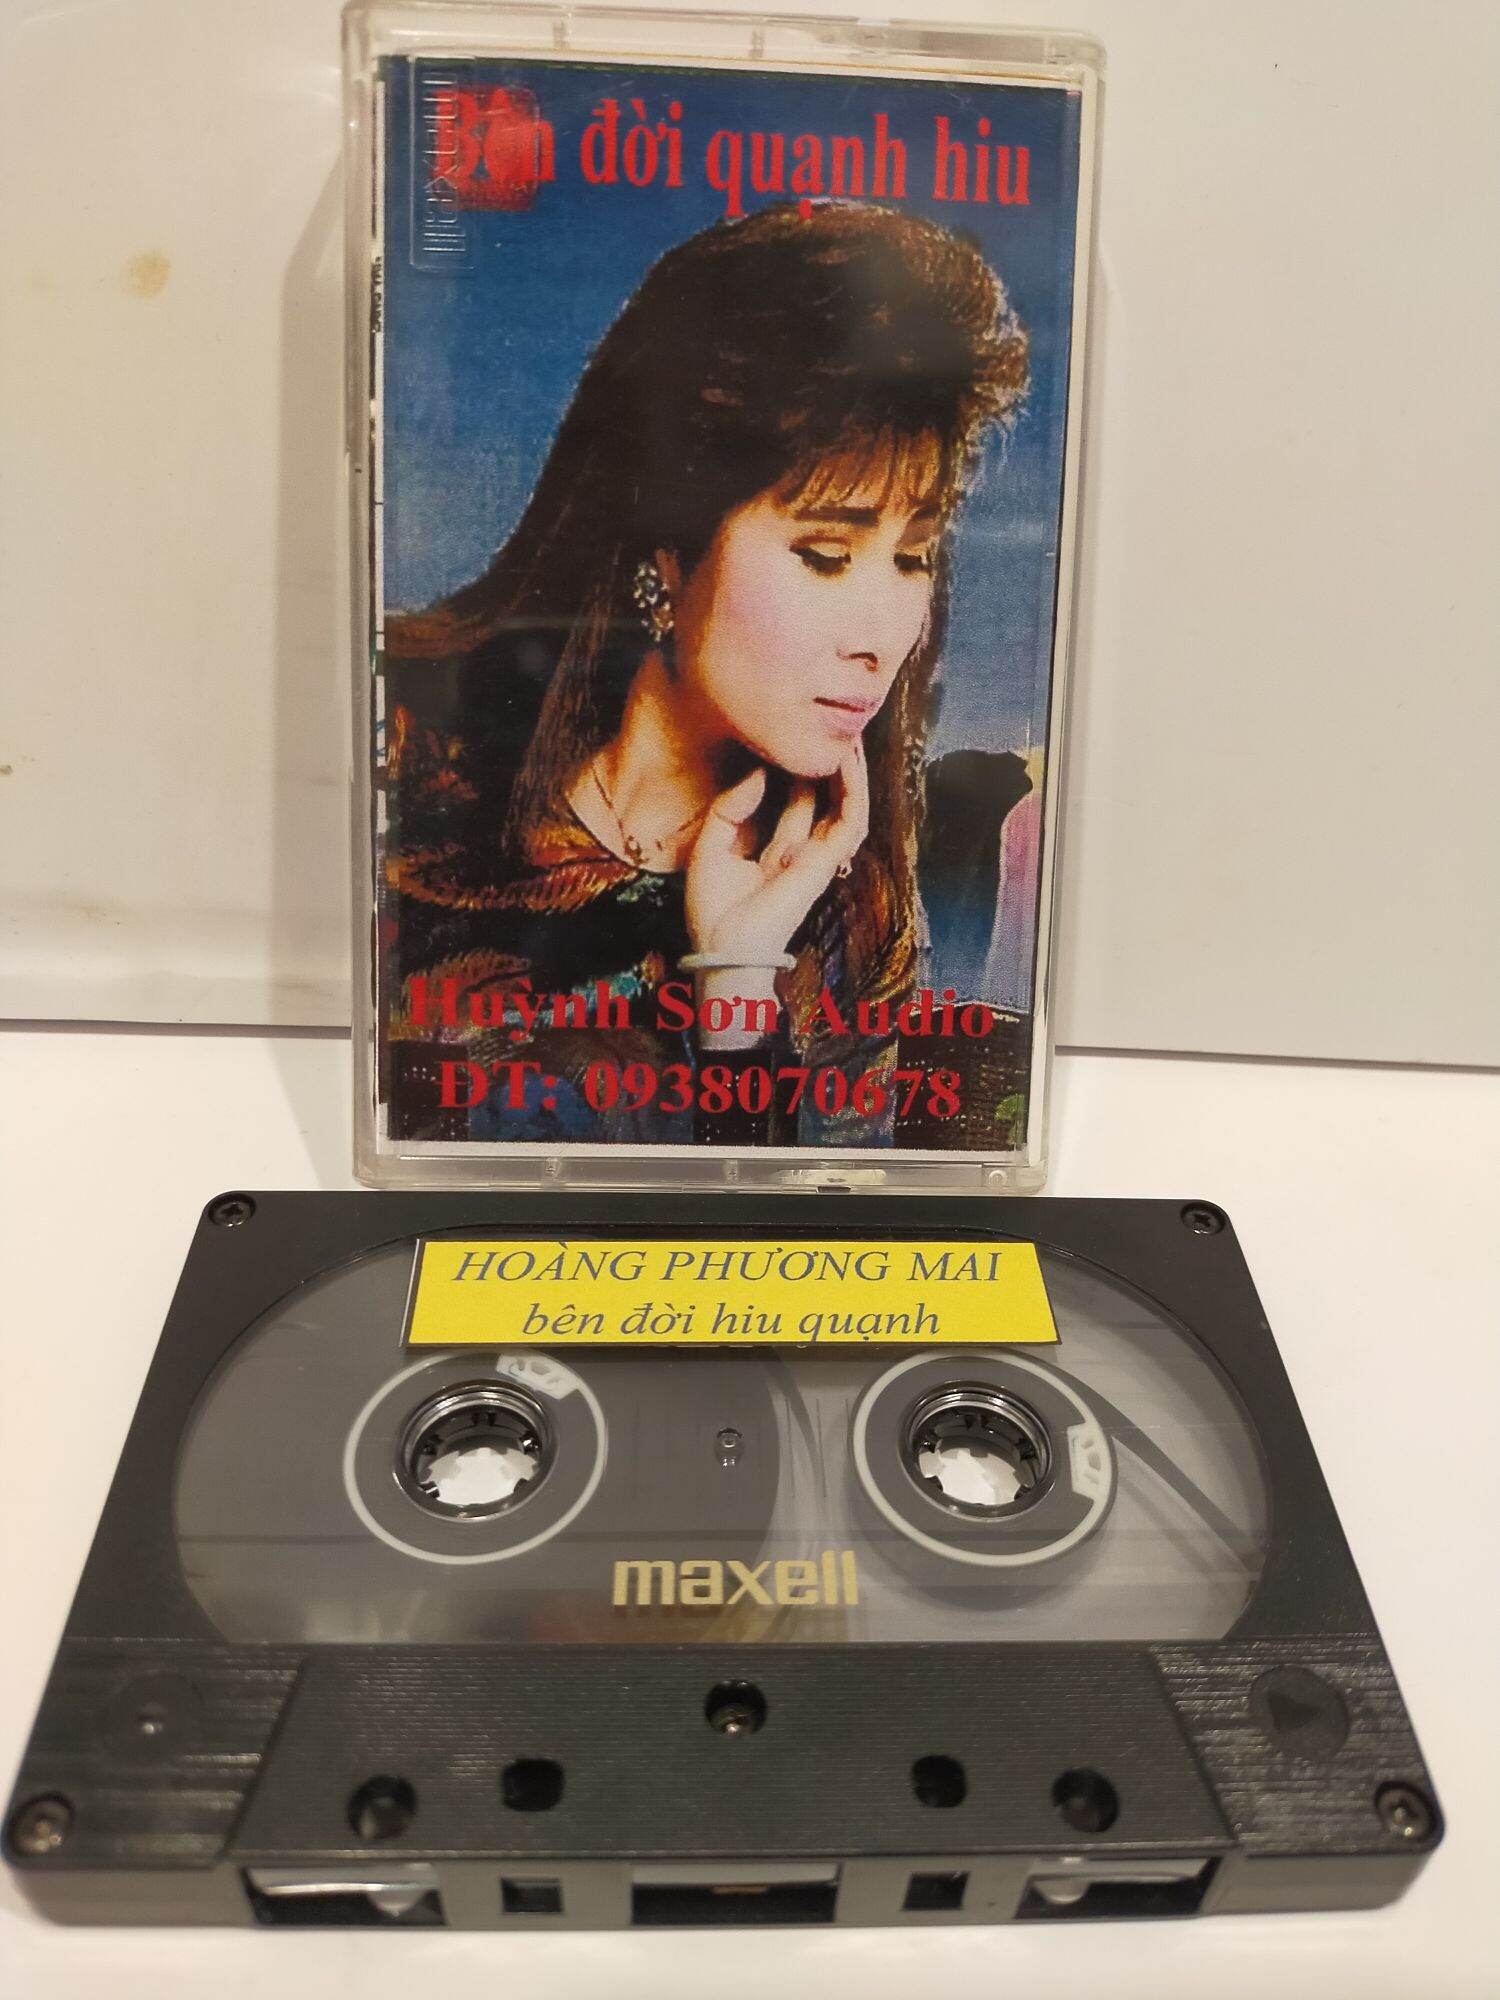 1 băng cassette maxell xl2 tiếng hát hoàng phương mai ( lưu ý: đây là băng 1 nước còn mới 95%)